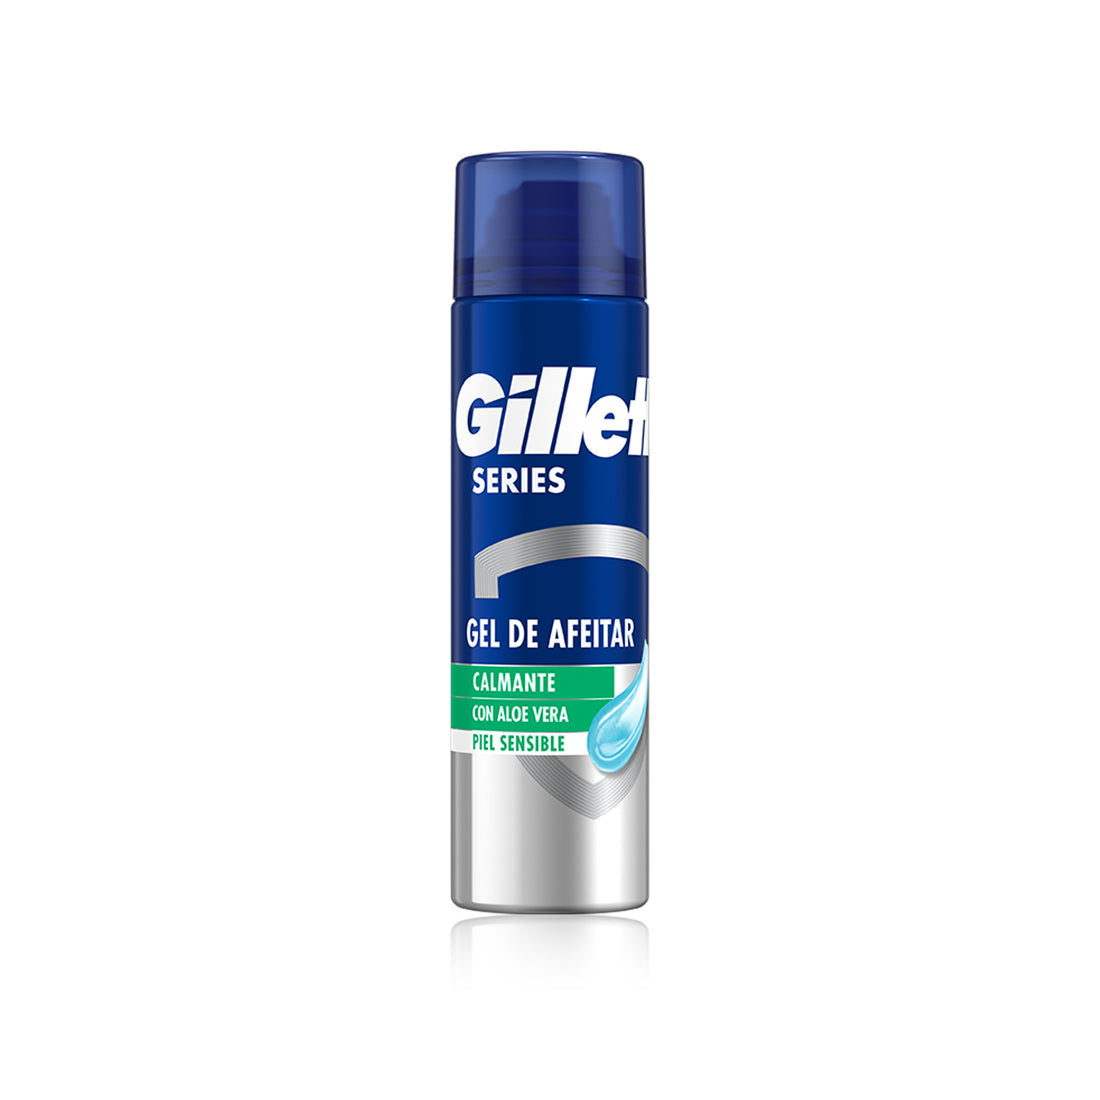 Gillette Shooting Gel Solmany Shaving 200 Ml